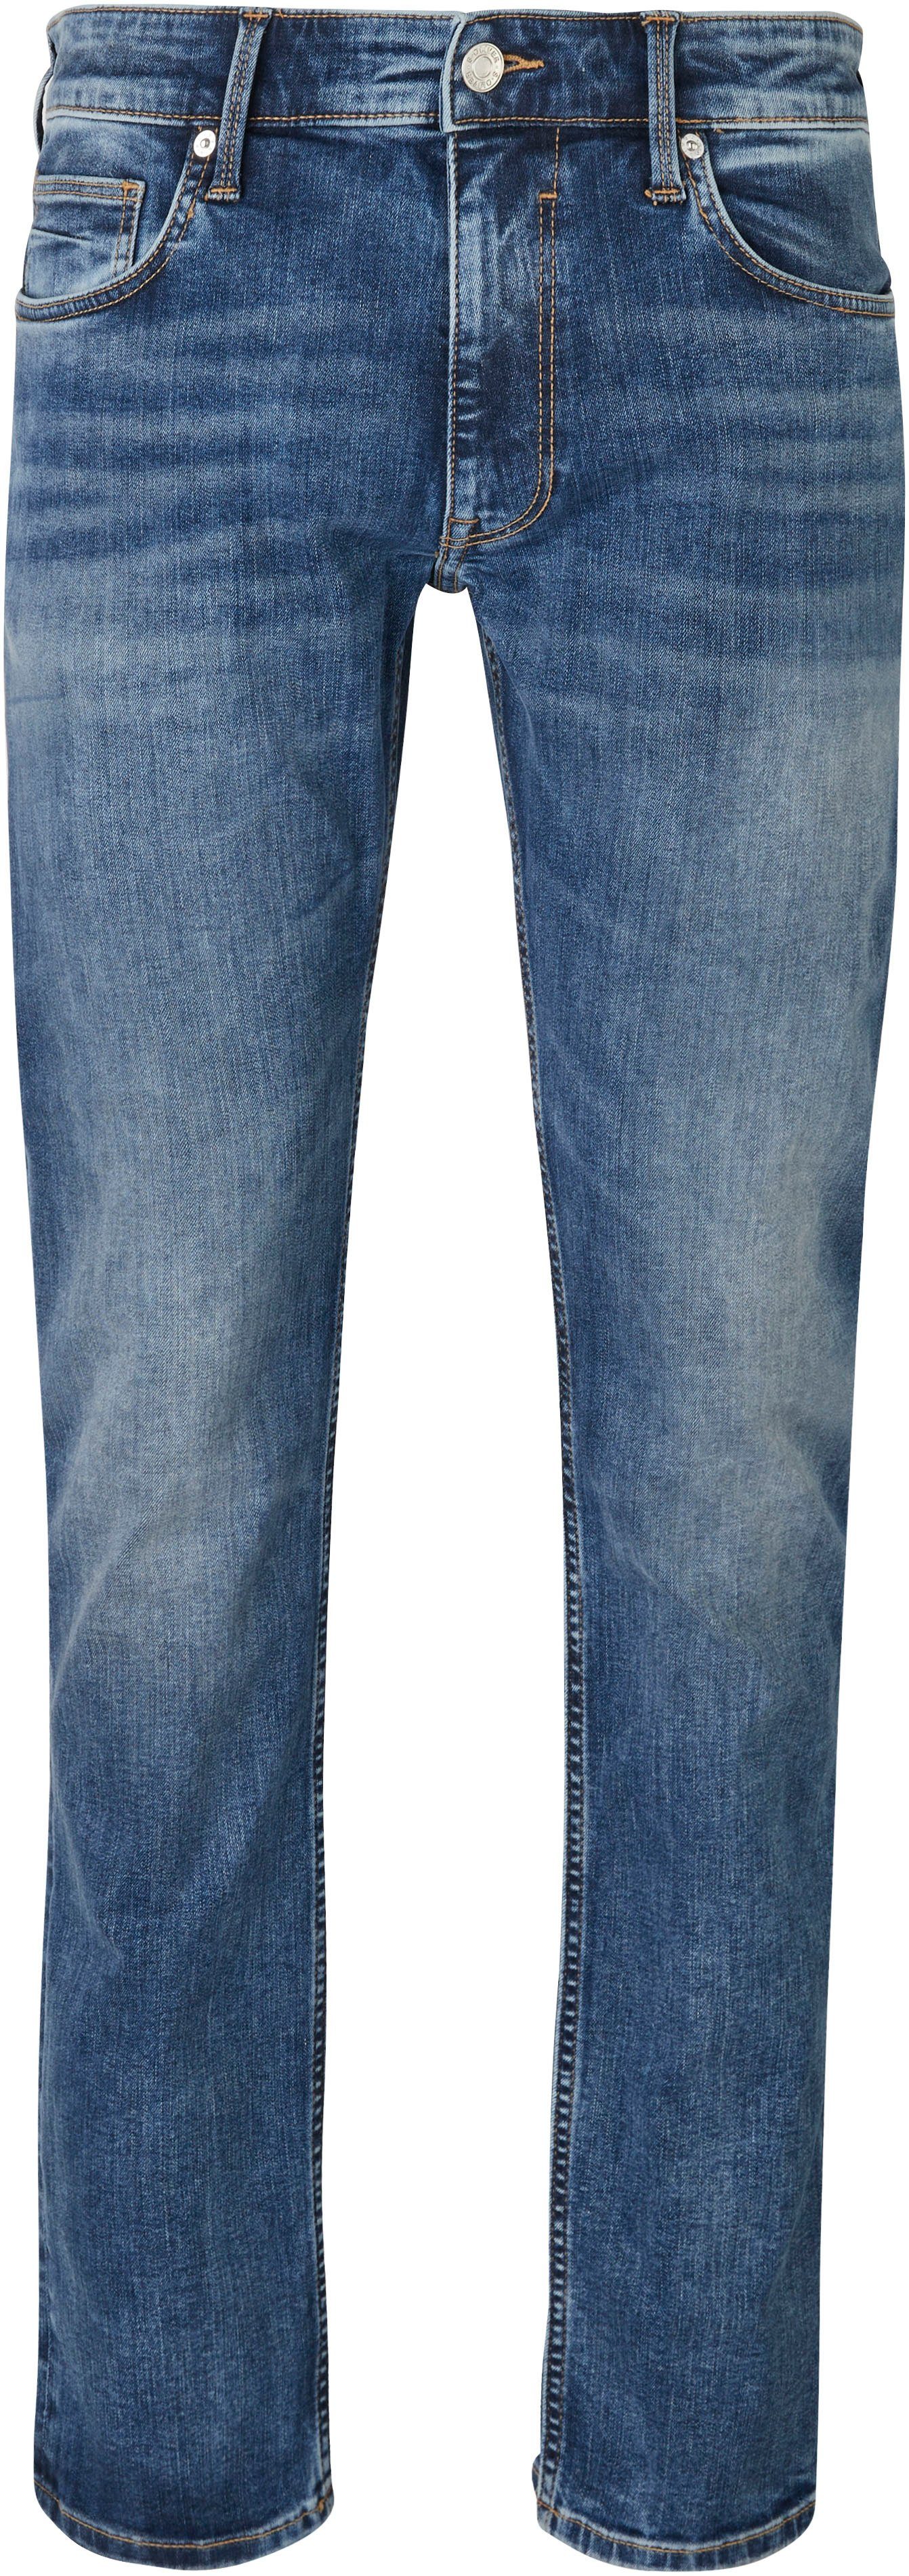 s.Oliver Bequeme 32 Jeans Gesäß- Eingrifftaschen und mit mid blue